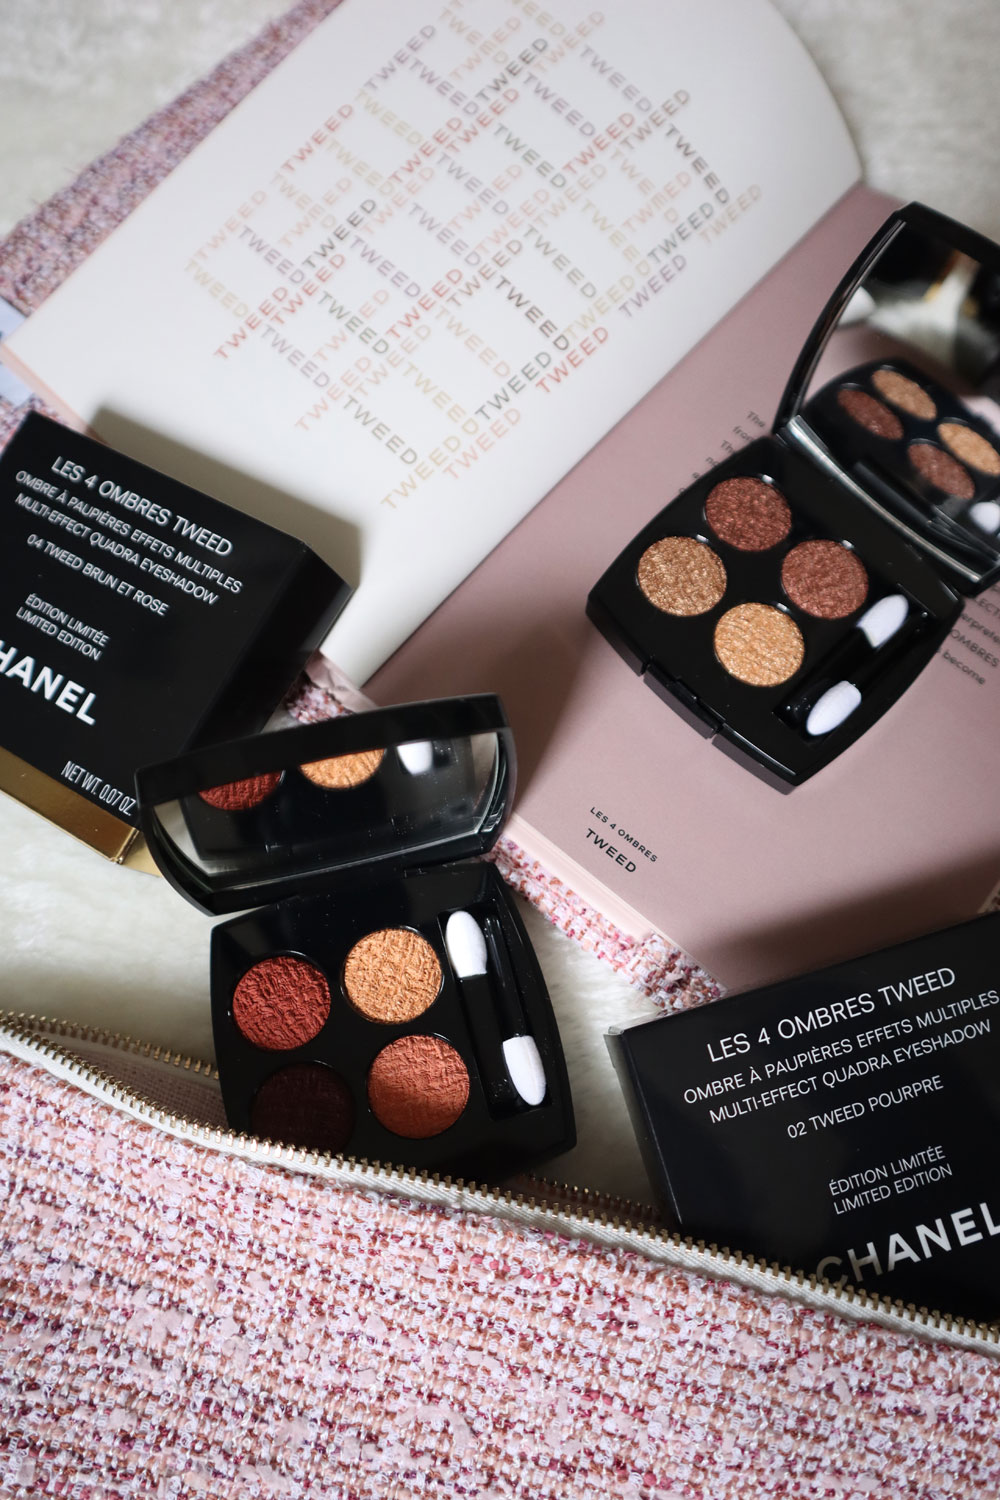 Dress your eyes in Tweed: Auf sonrisa gibt es eine Preview auf die limitierte Les 4 Ombres Tweed-Kollektion von Chanel.